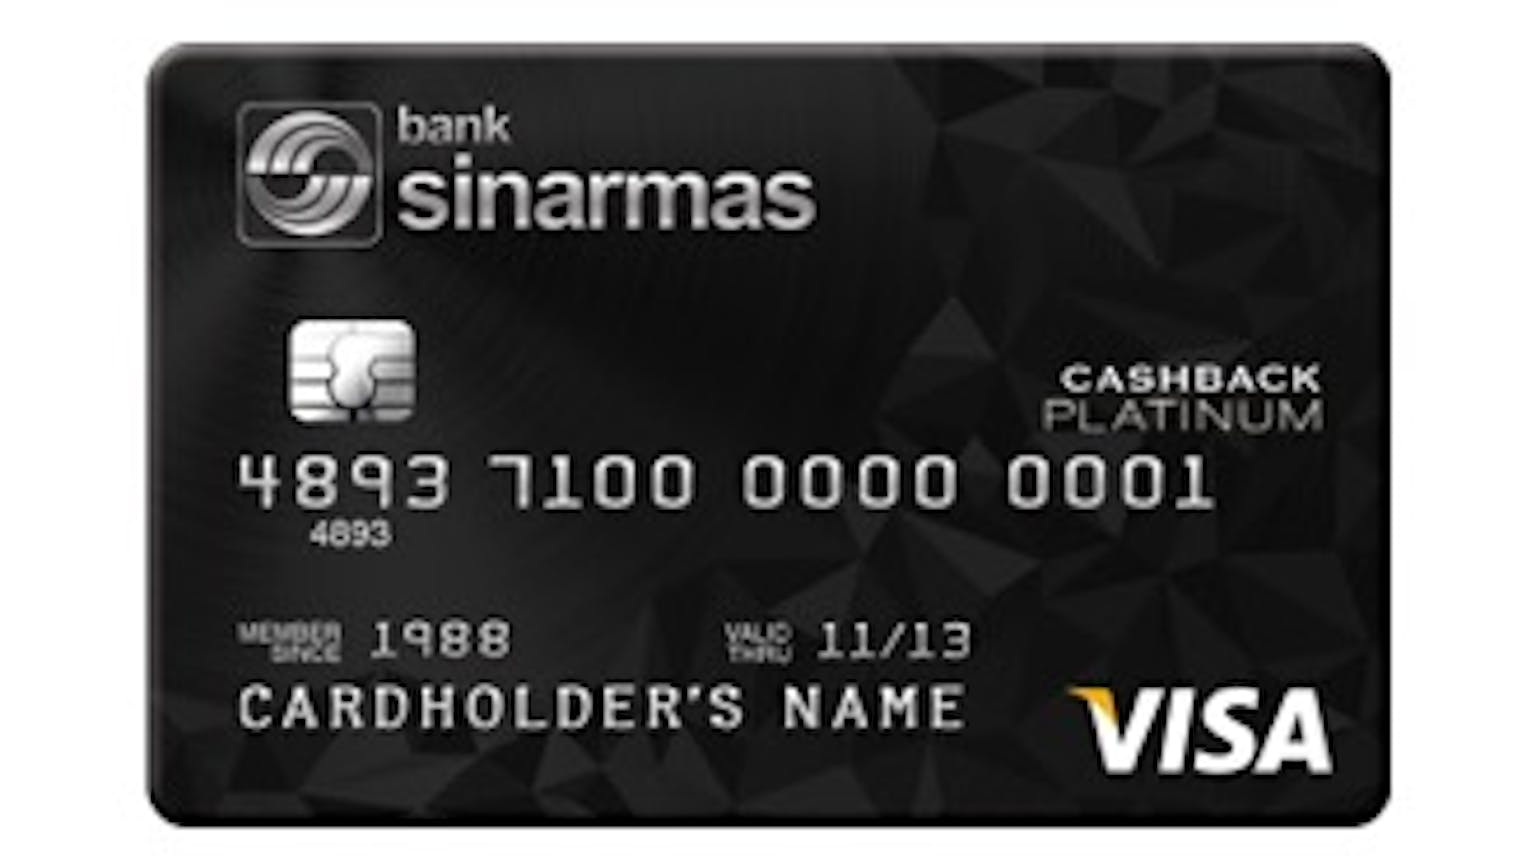 Bank Sinarmas Personal Platinum